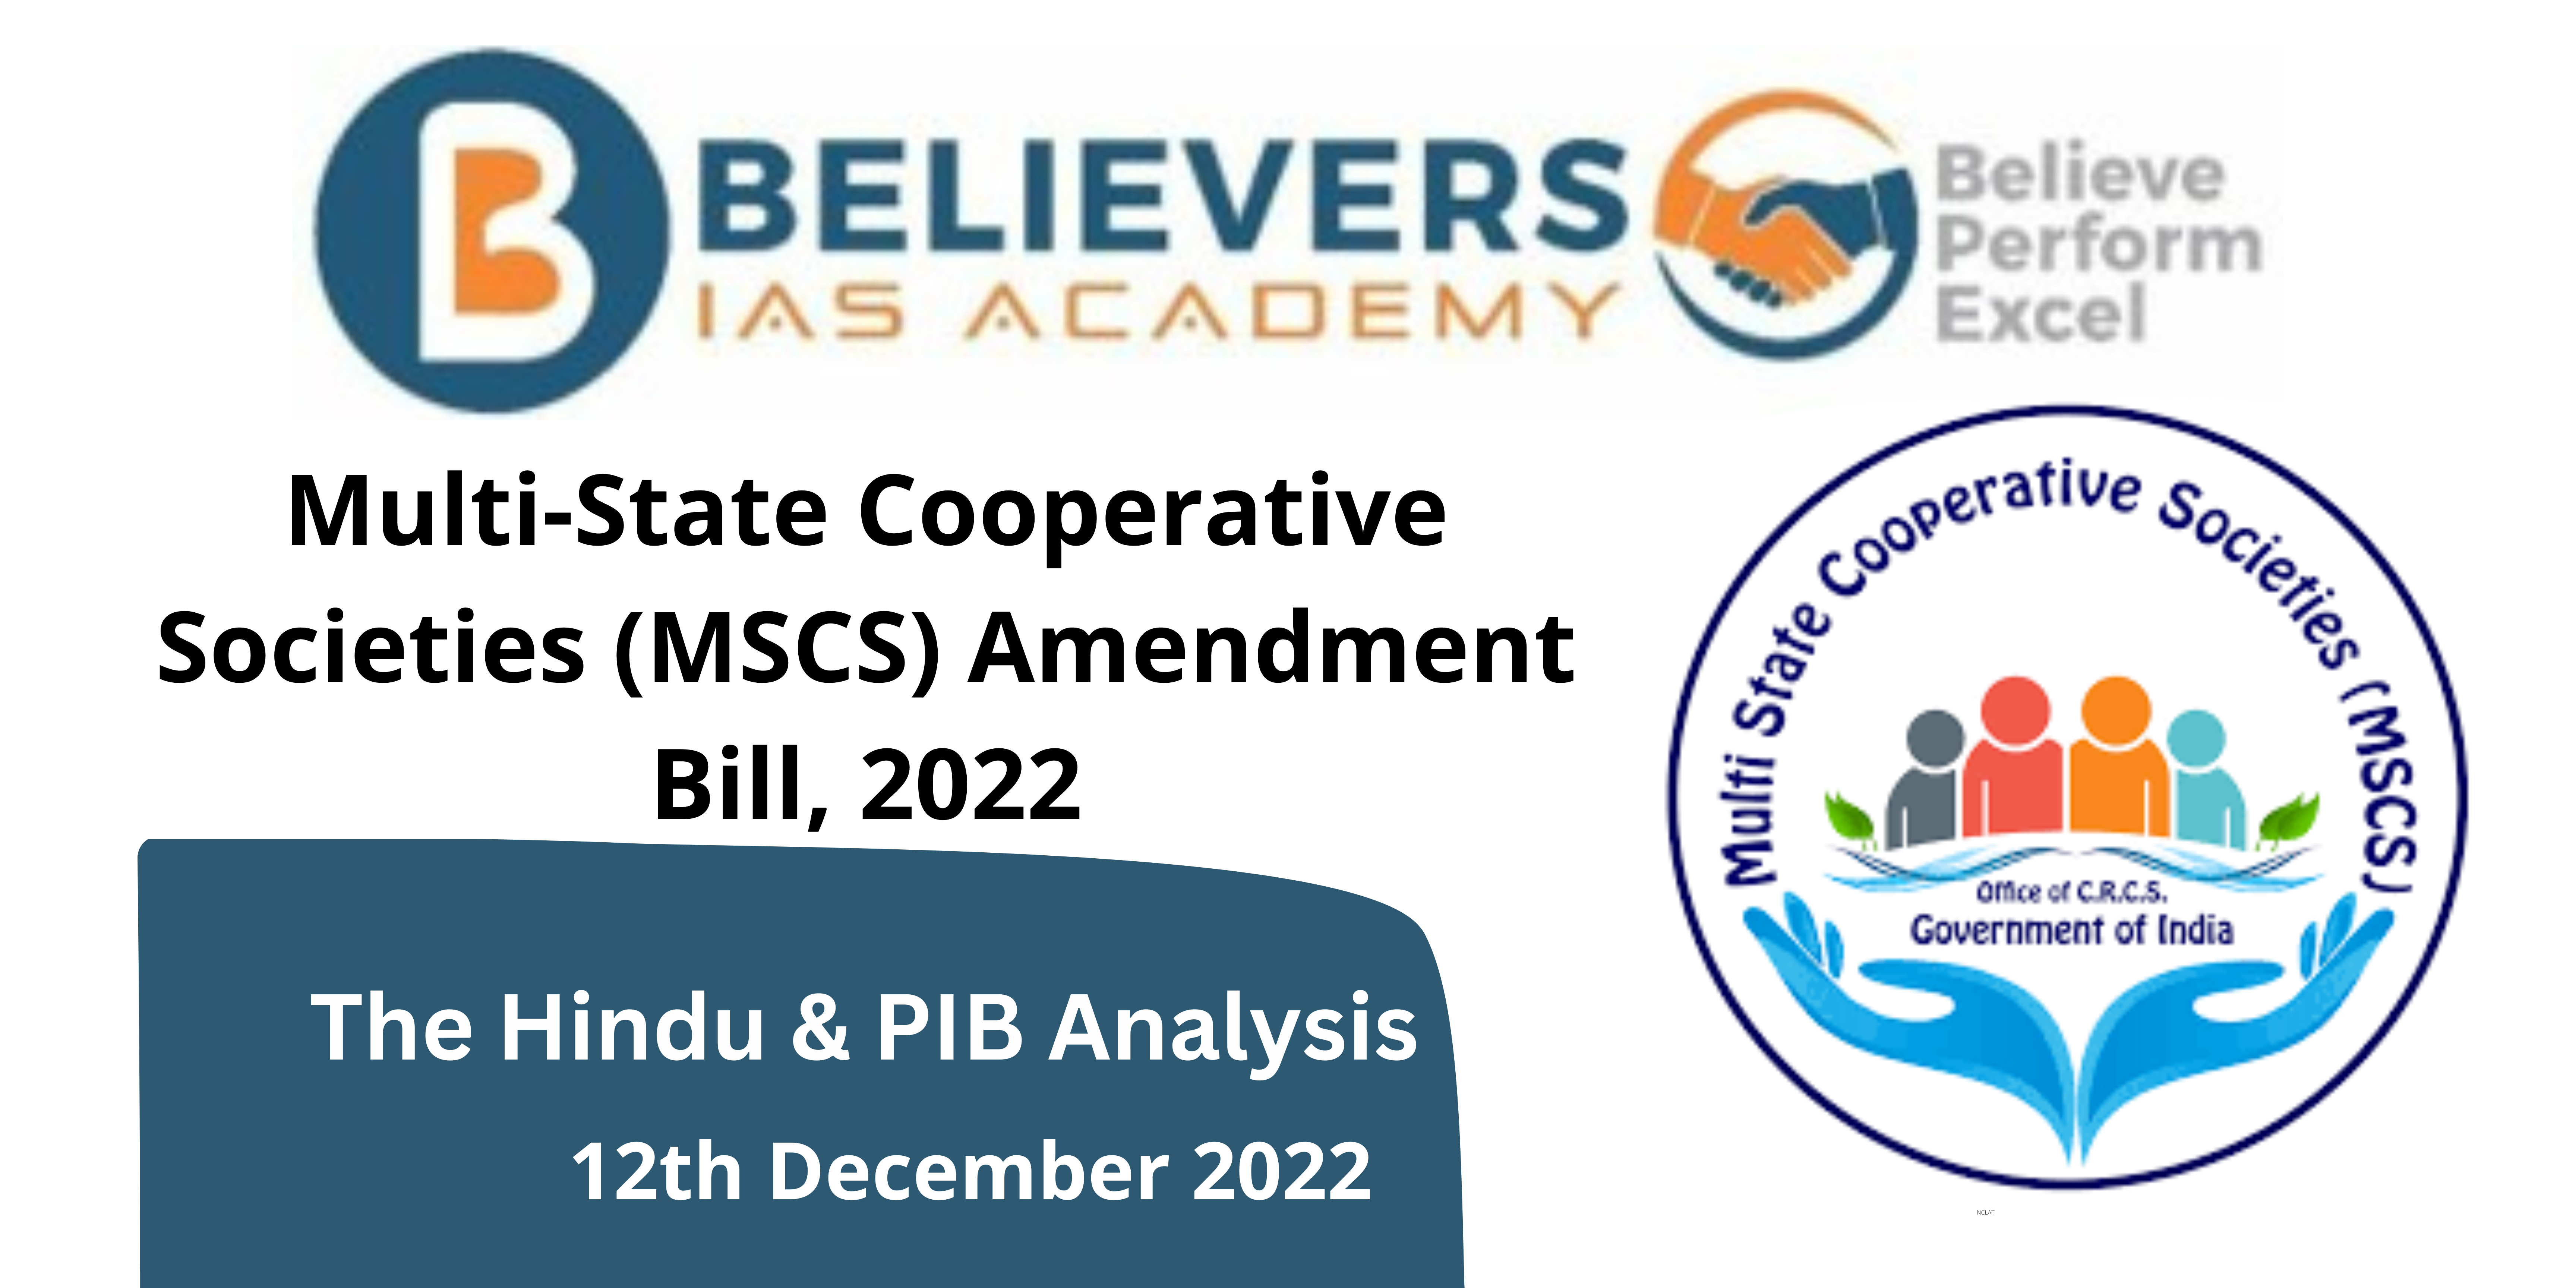 MSCS Amendment Bill, 2022